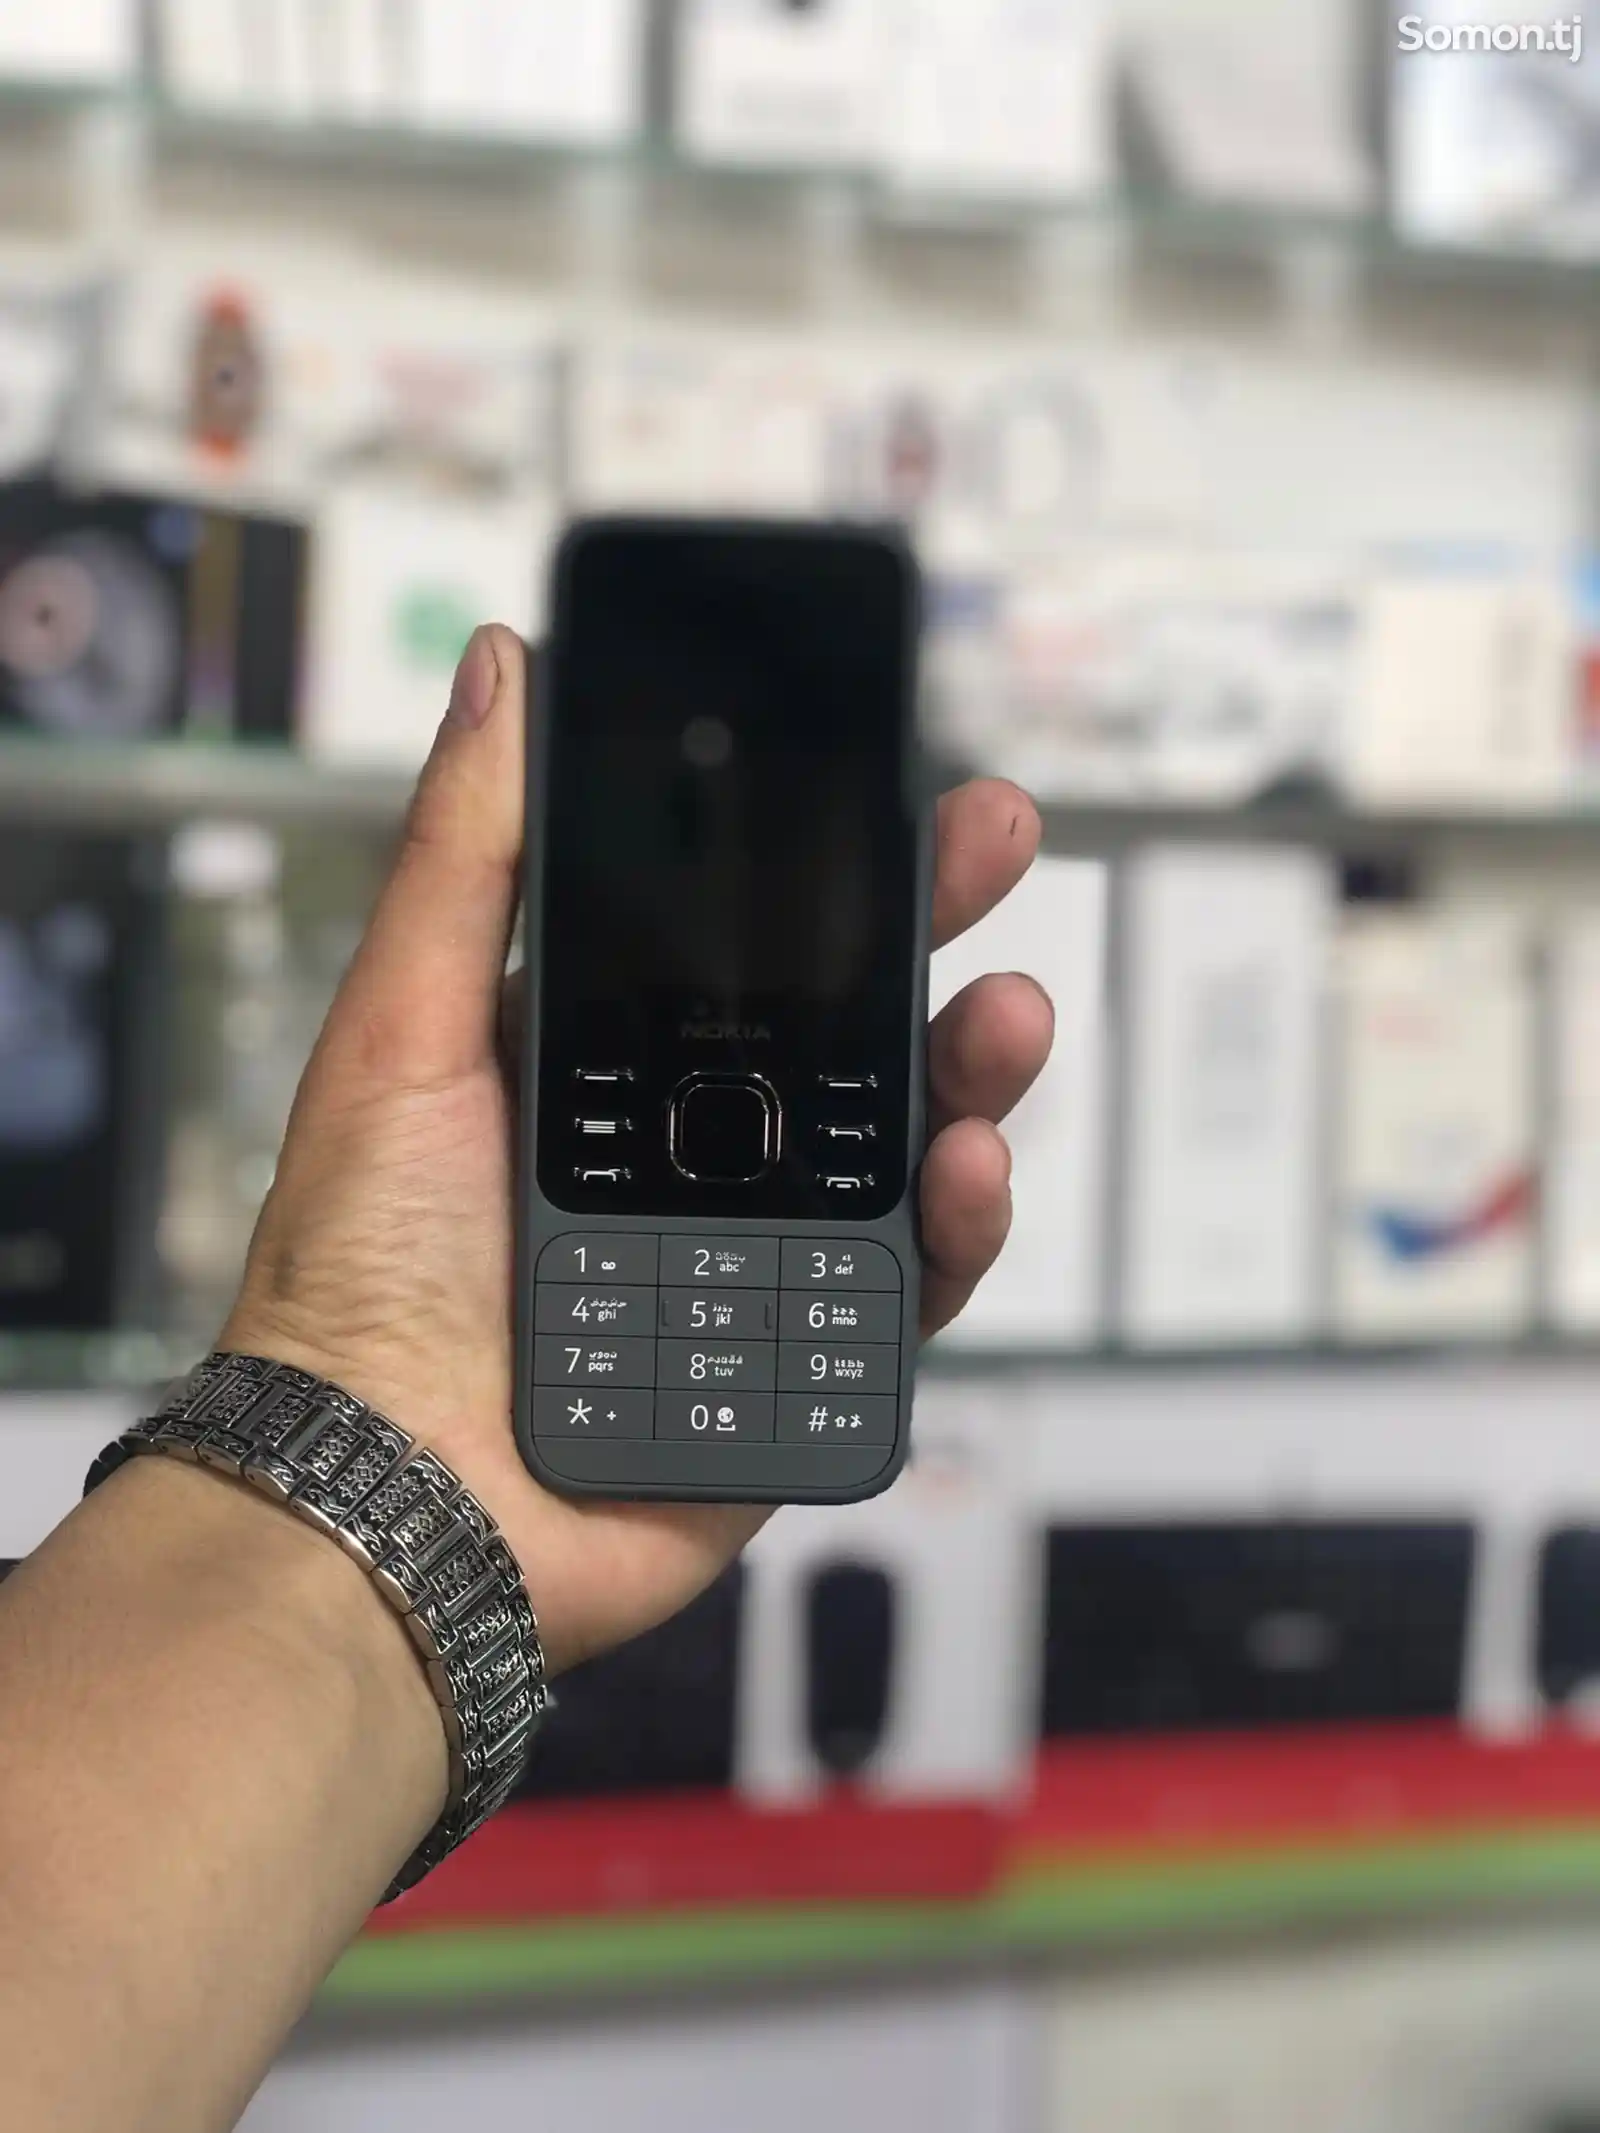 Nokia 6300-2